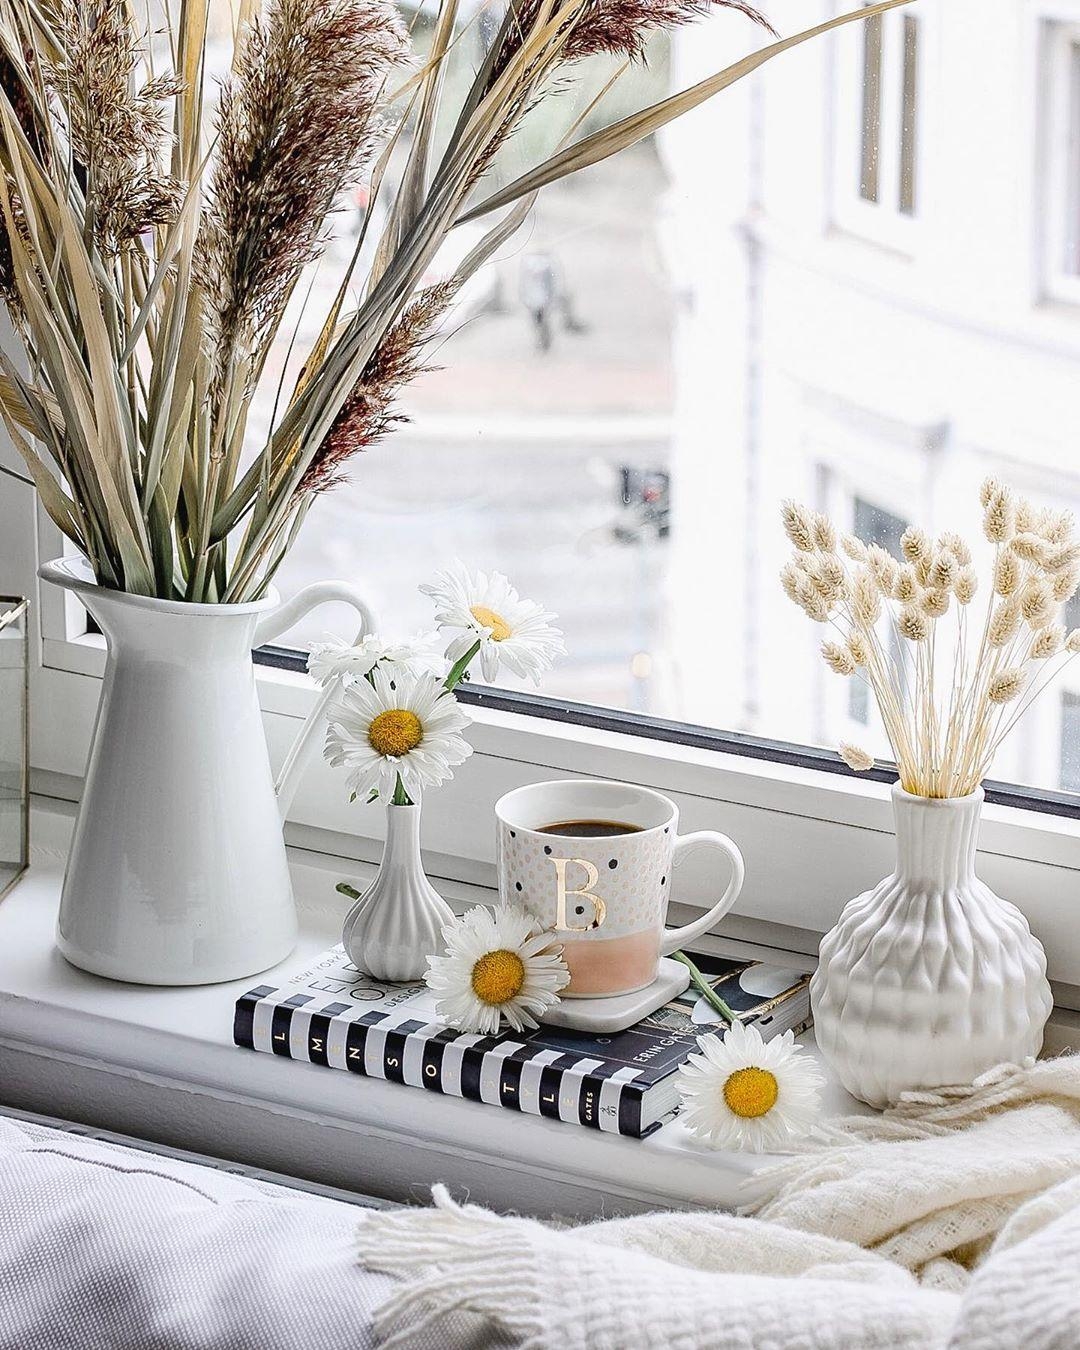 Ich wünsche euch einen fabelhaften ersten #Kaffee am Morgen. ☕️🌾 #fenster #deko #blumen #blumenliebe #vase #vasen #home